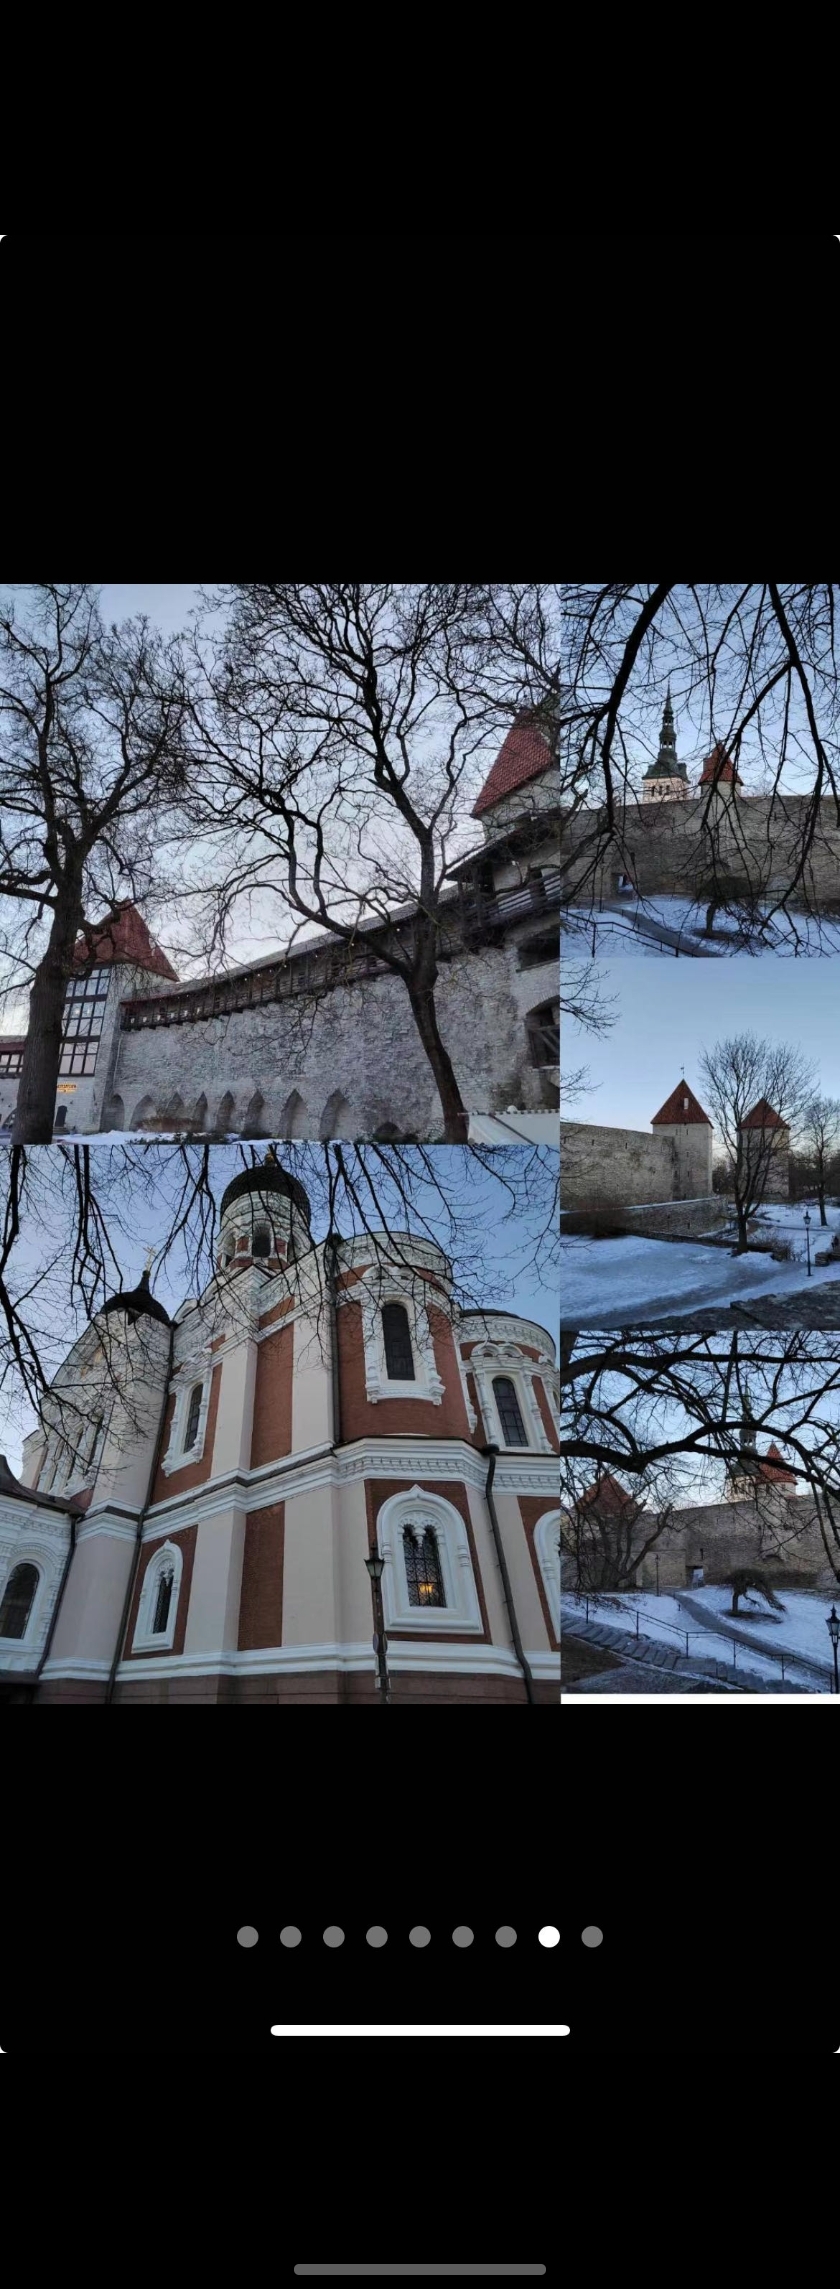 爱莎尼亚—塔林老城、爱沙尼亚之门、塔林市政厅、塔林老城城墙、塔林圣母主教座堂 ……晚上​在市政厅楼下